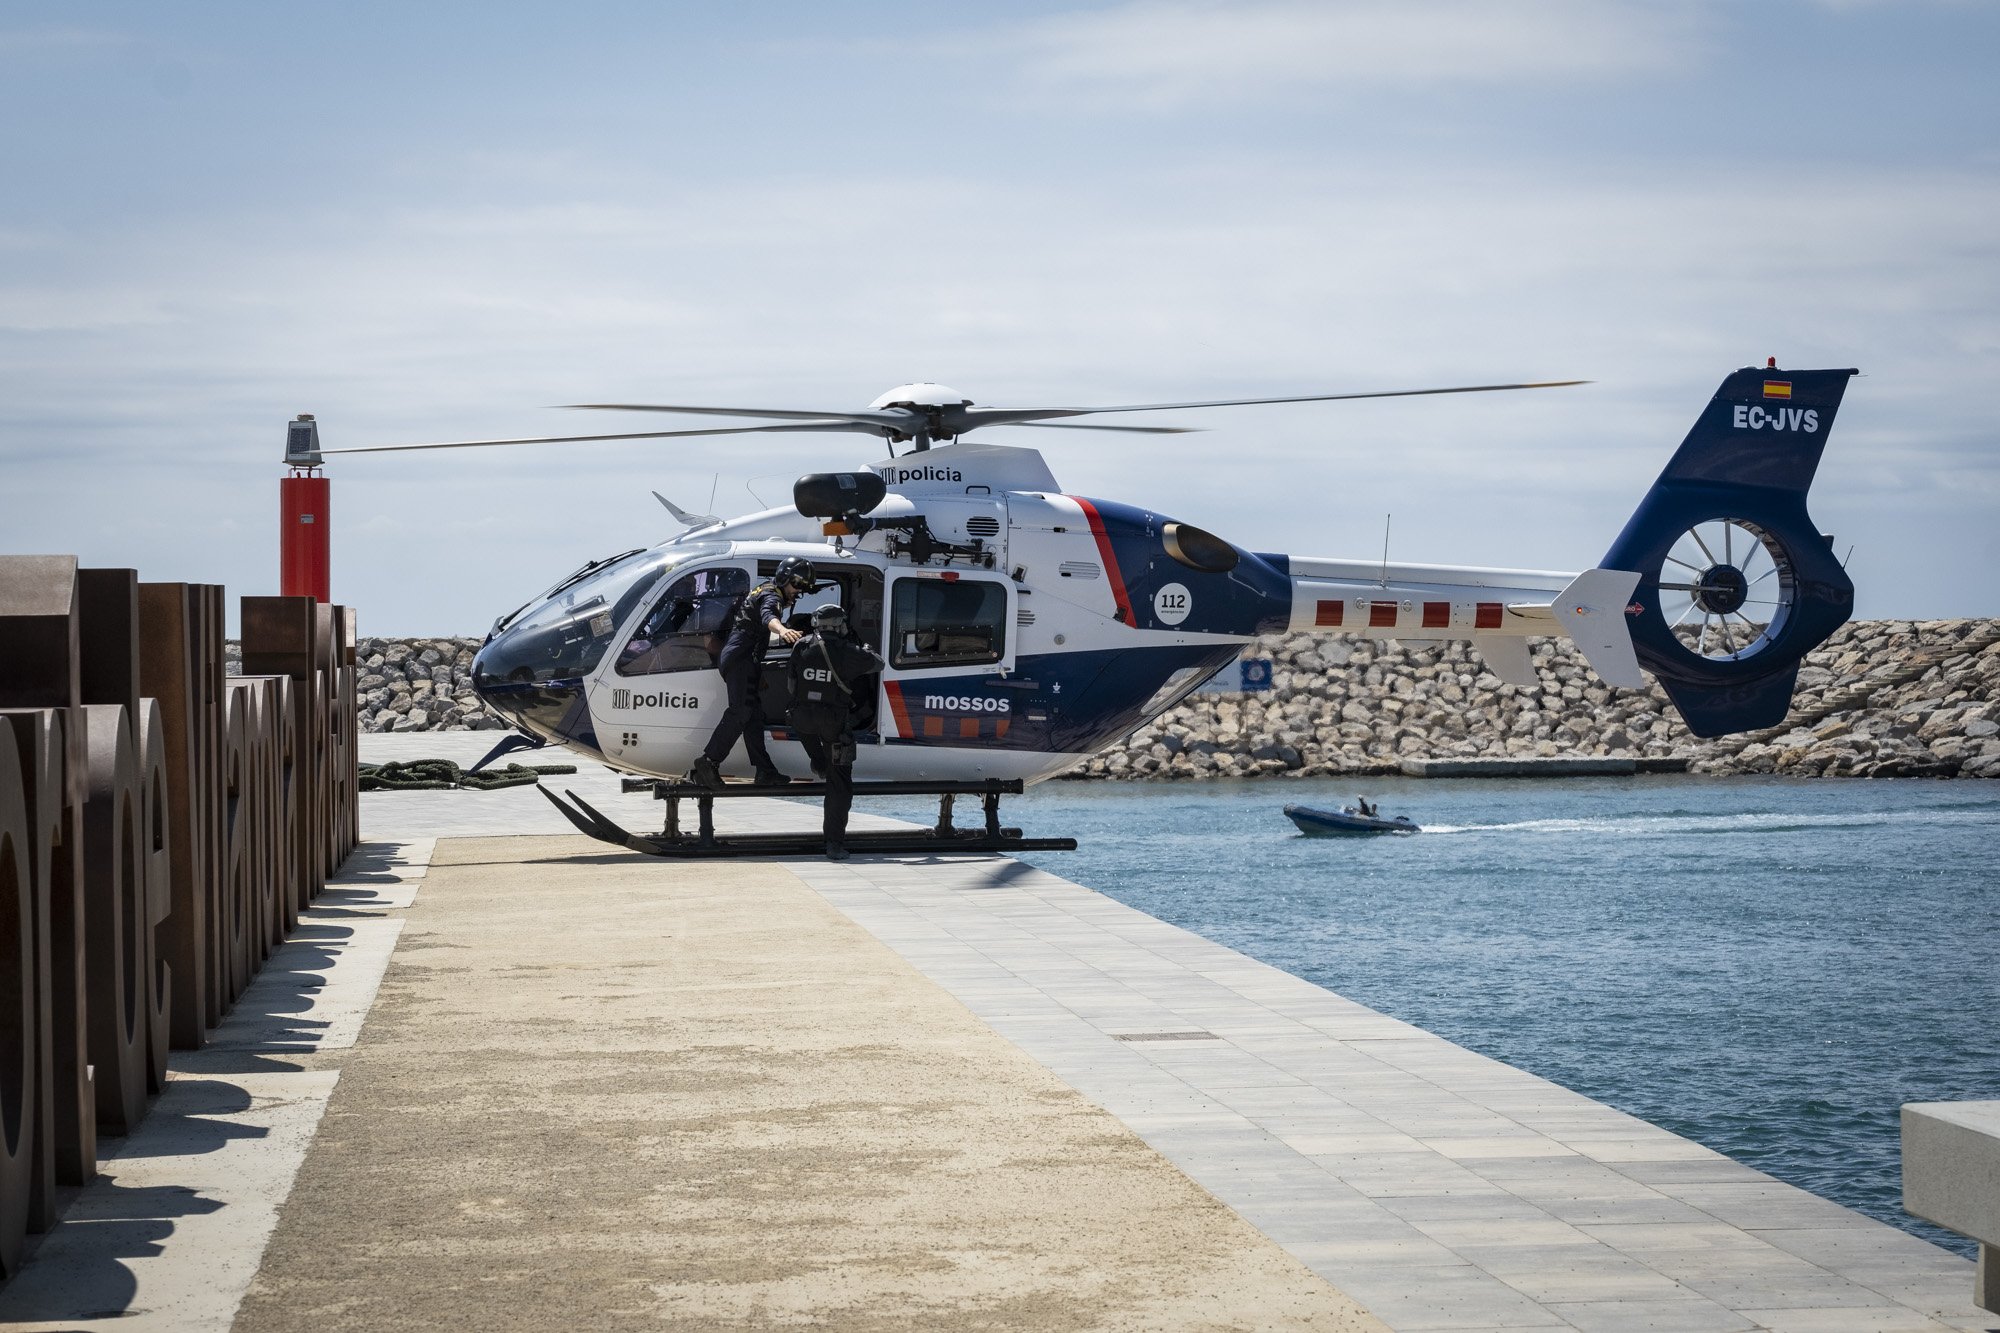 Simulacre mossos d'esquadra detenció narcos mar terra i aire, Vilanova i la Geltrú GEI Helicòpter / Foto: Carlos Baglietto